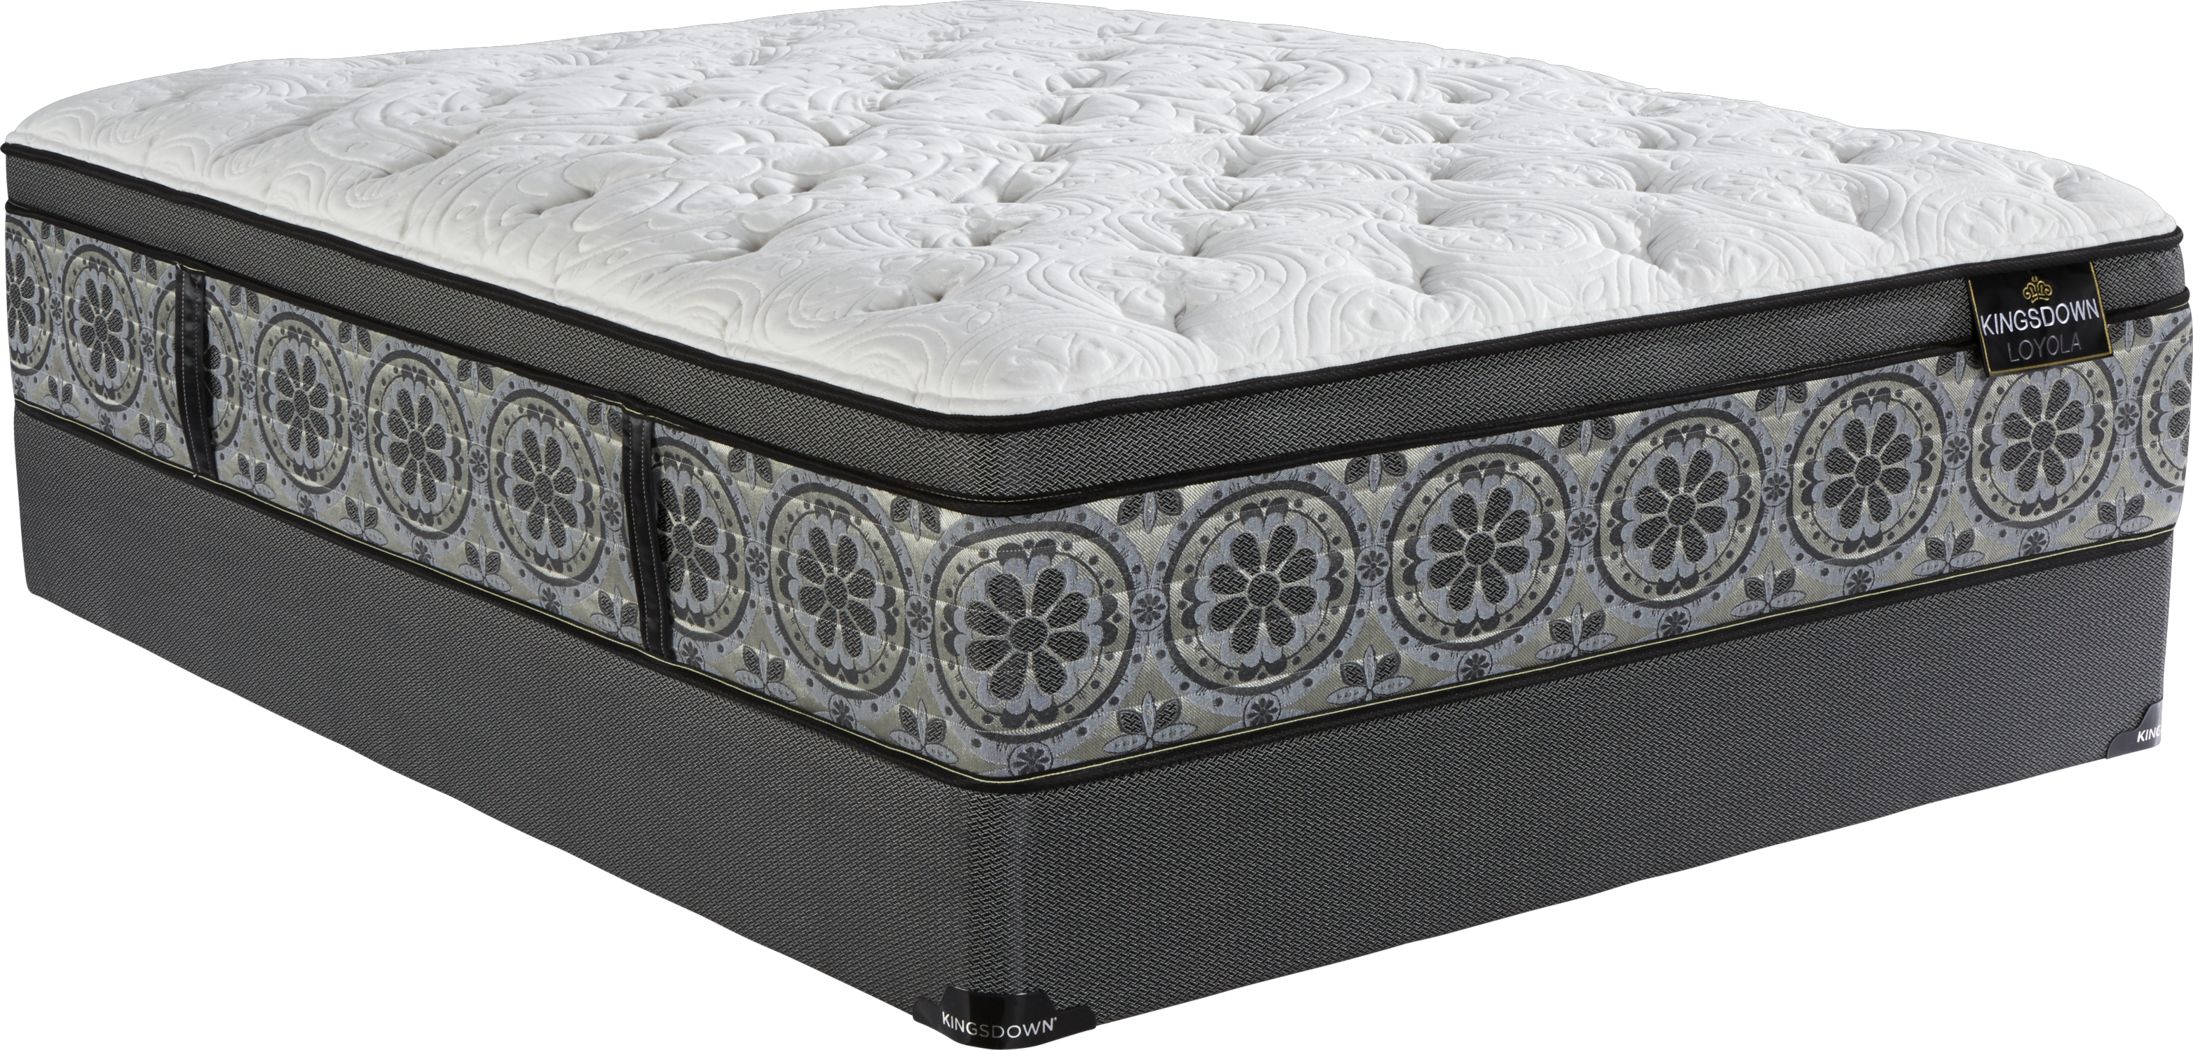 kingsdown queen size mattress set